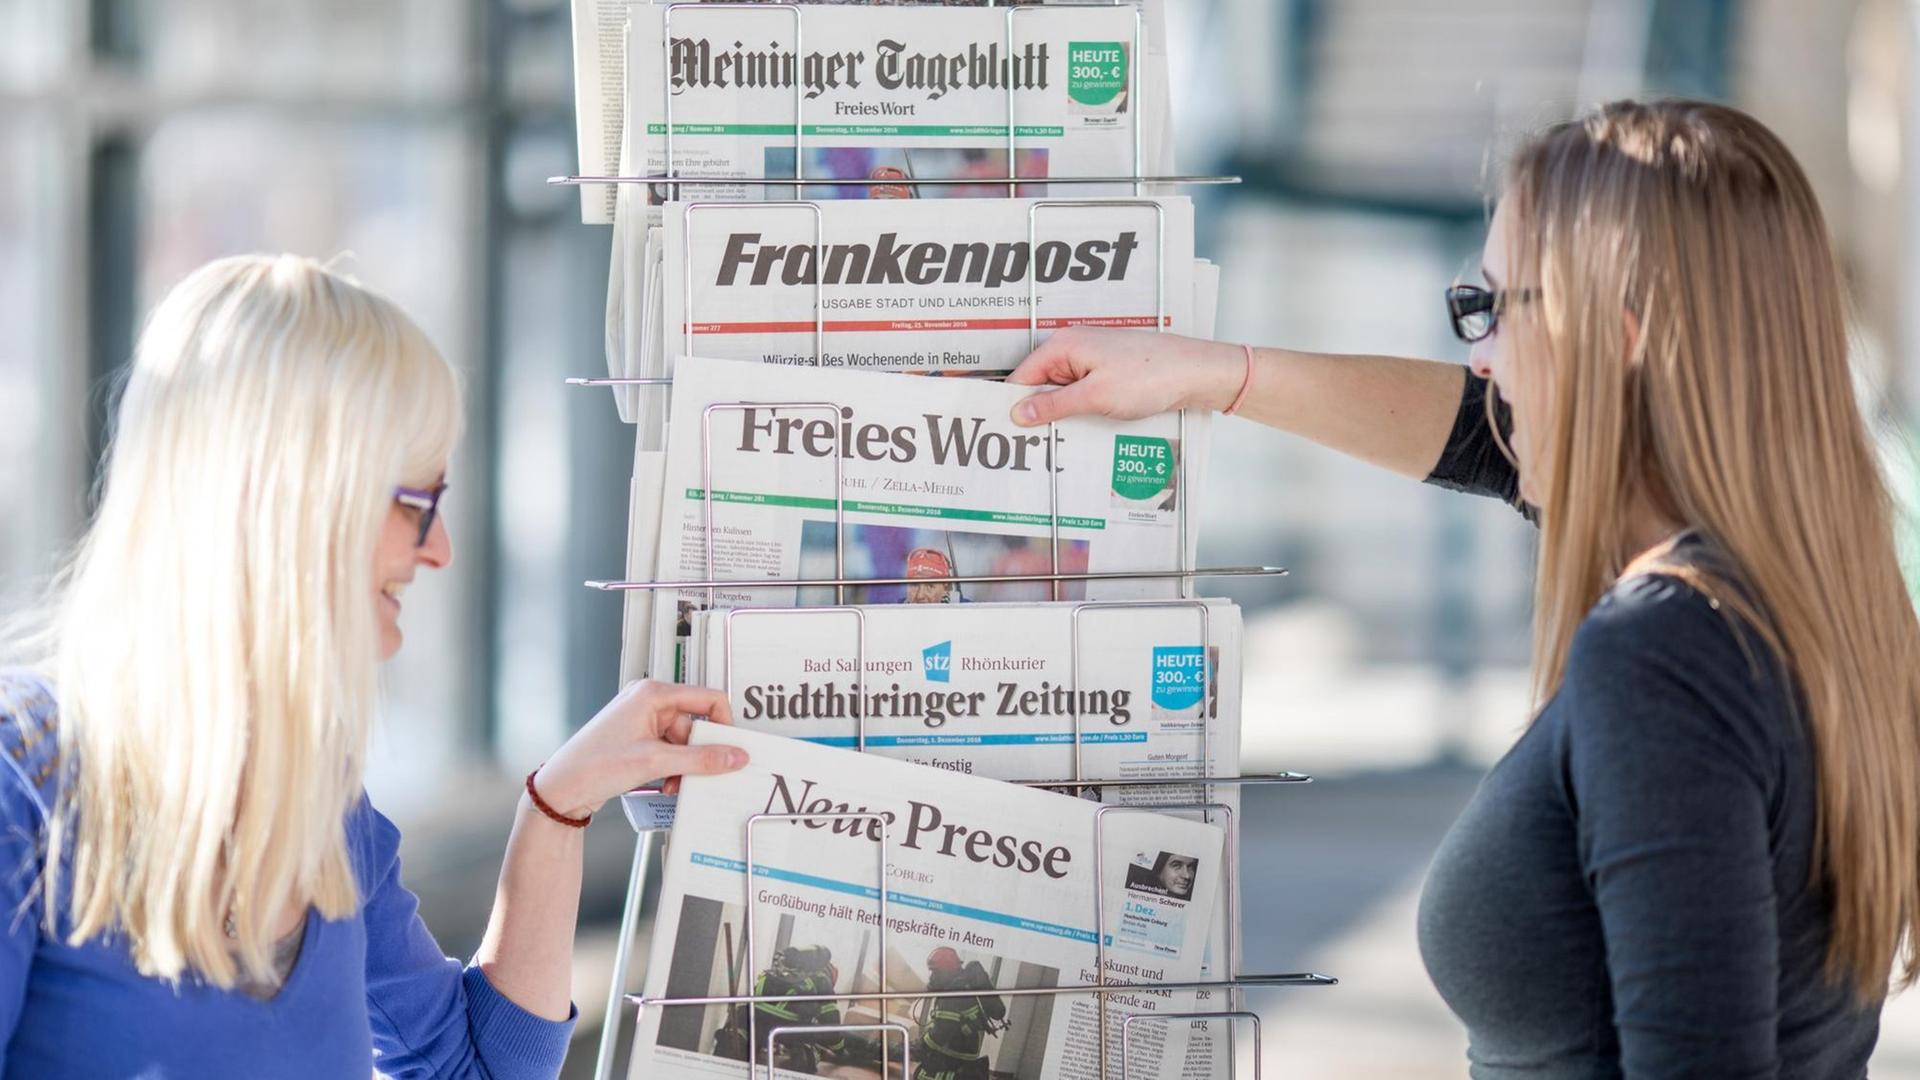 Tageszeitungen von Frankenpost, Neue Presse, Freies Wort, Südthüringer Zeitung und FW Meininger Tageblatt stecken auf einem Zeitungsständer